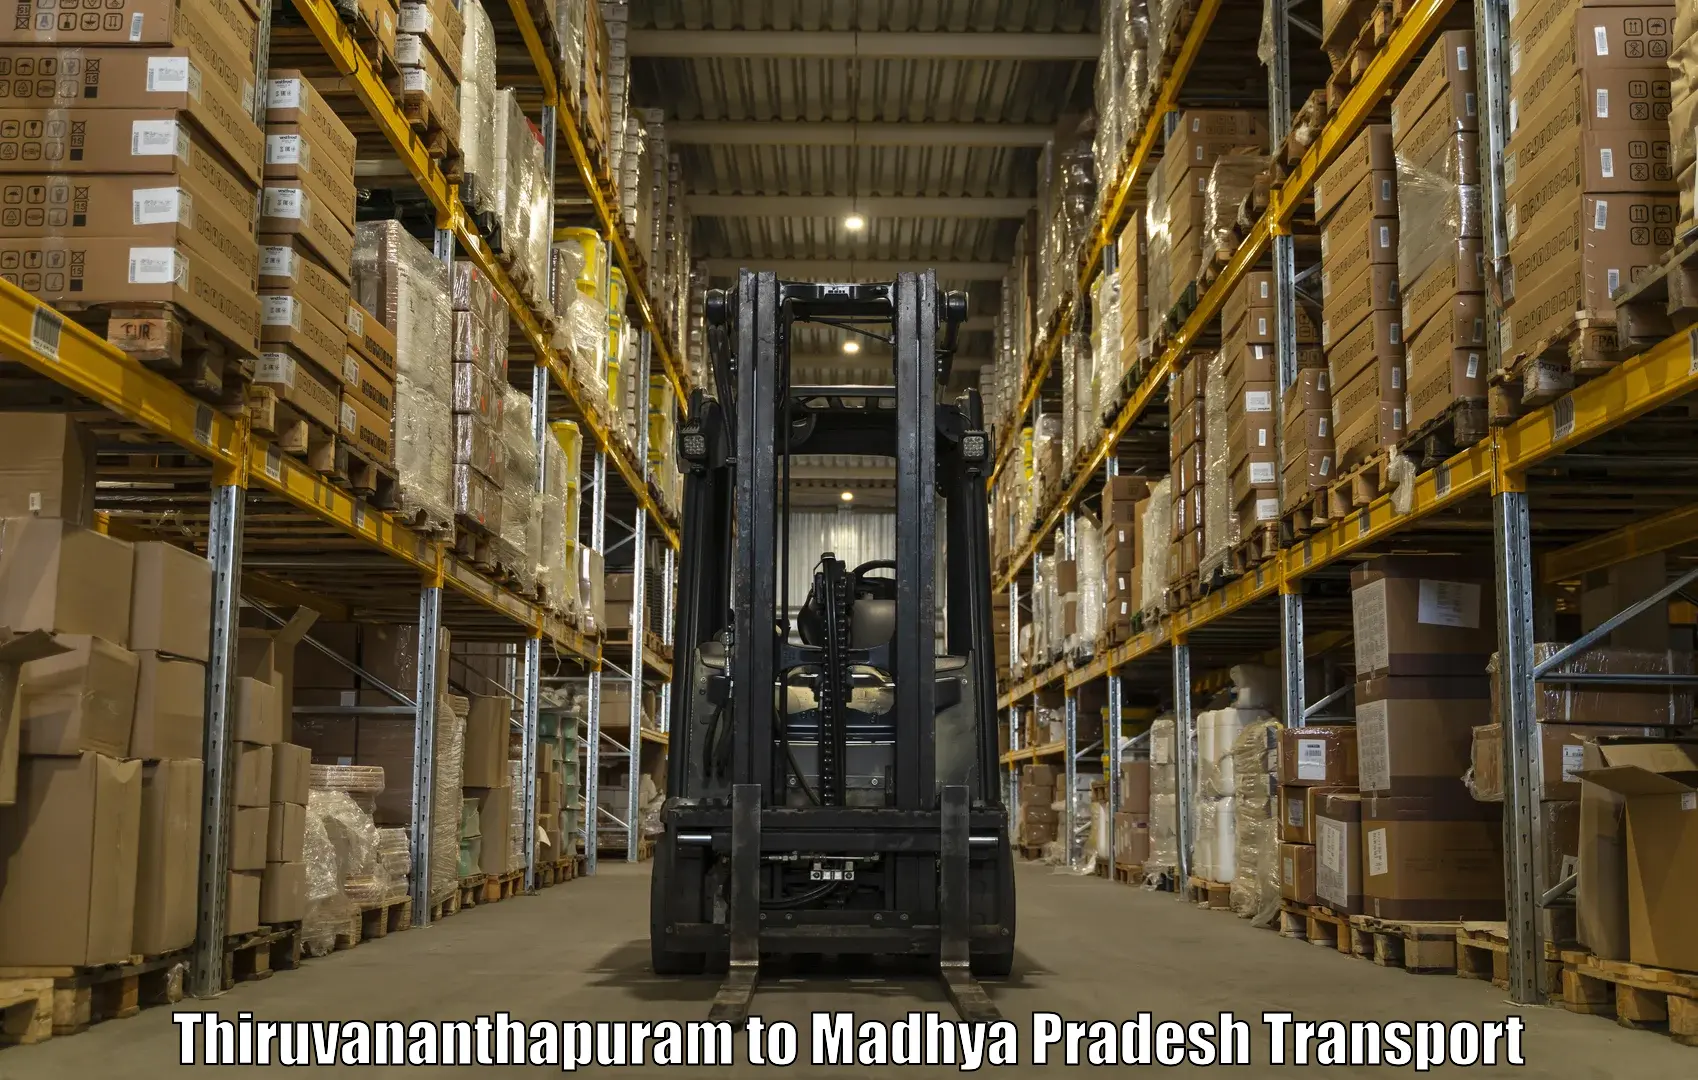 Transport in sharing Thiruvananthapuram to Mandideep